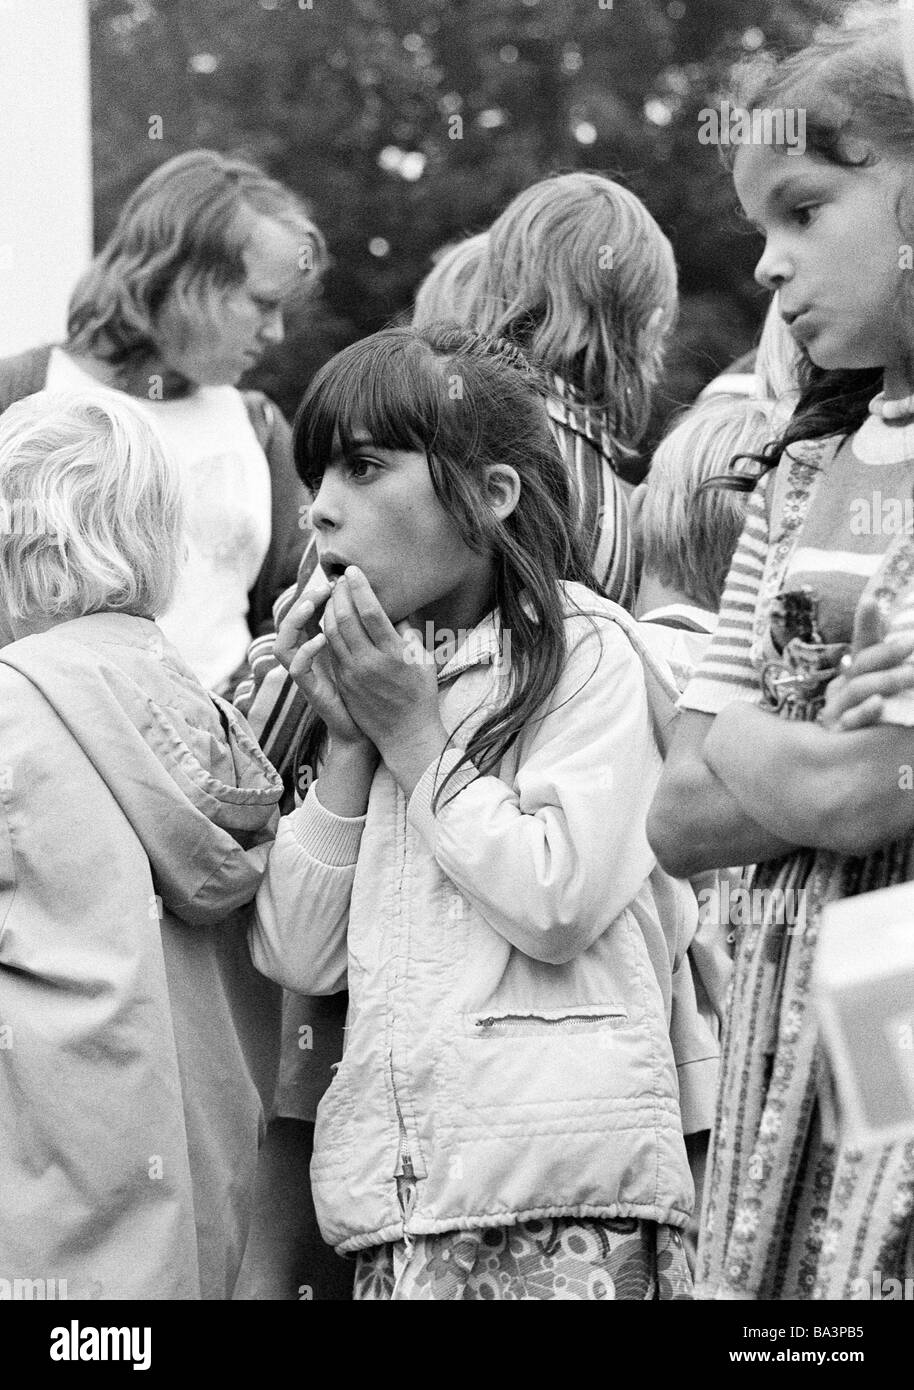 Negli anni settanta, foto in bianco e nero, persone, bambini, bambini trattare, bambina è affascinata circa una mostra, di età compresa tra i 5 e gli 8 anni, altri bambini guardando annoiato, opposte tra interesse e disinteresse Foto Stock